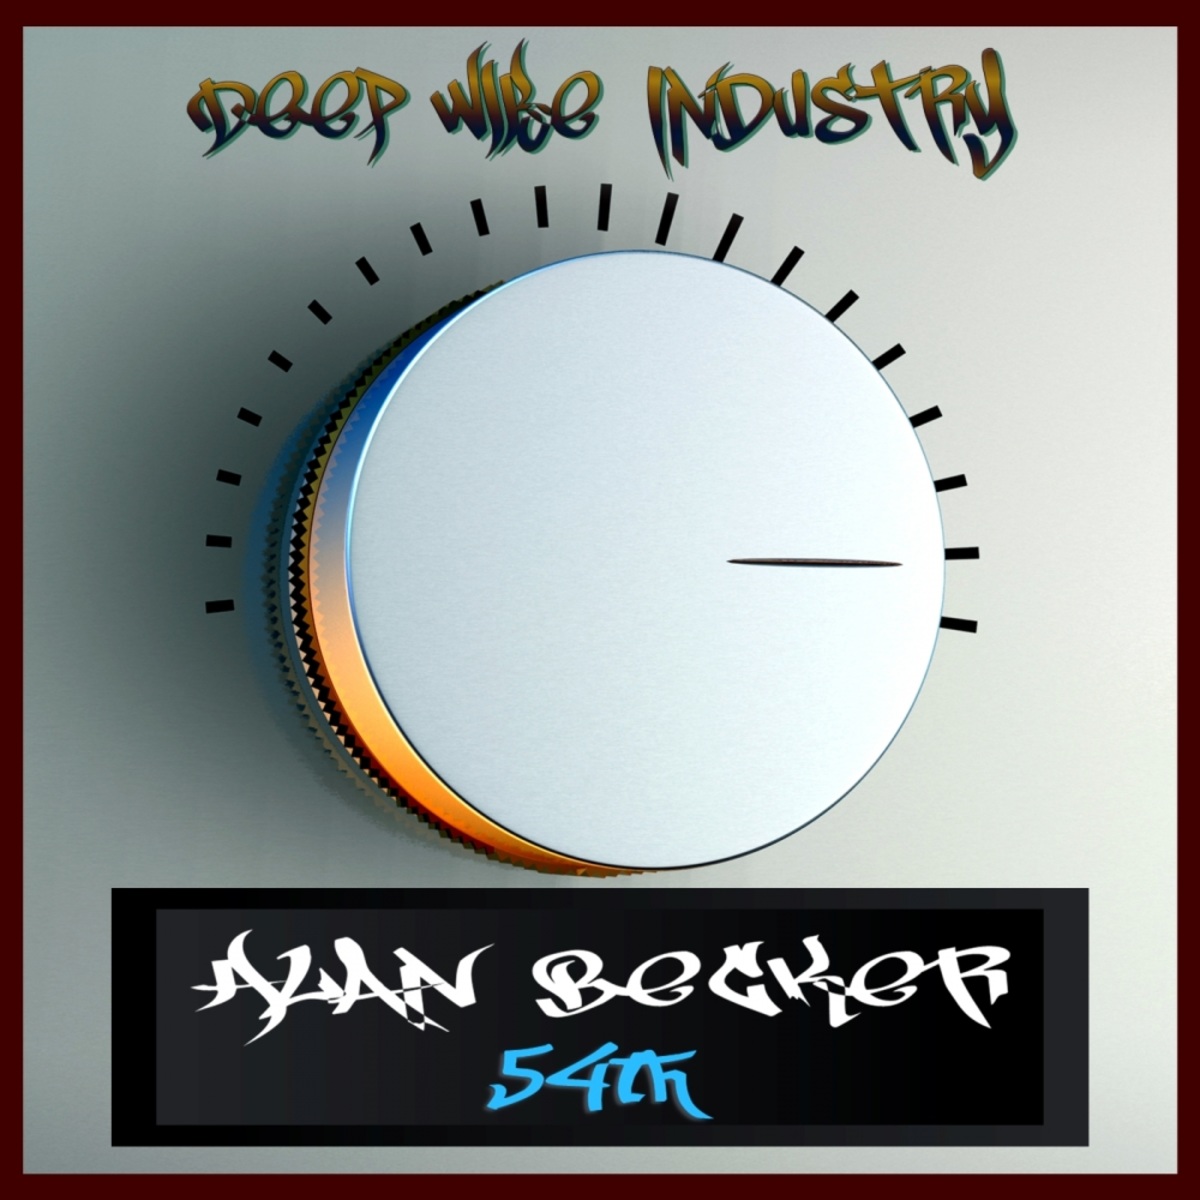 Alan Becker - 54th / Deep Wibe Industry